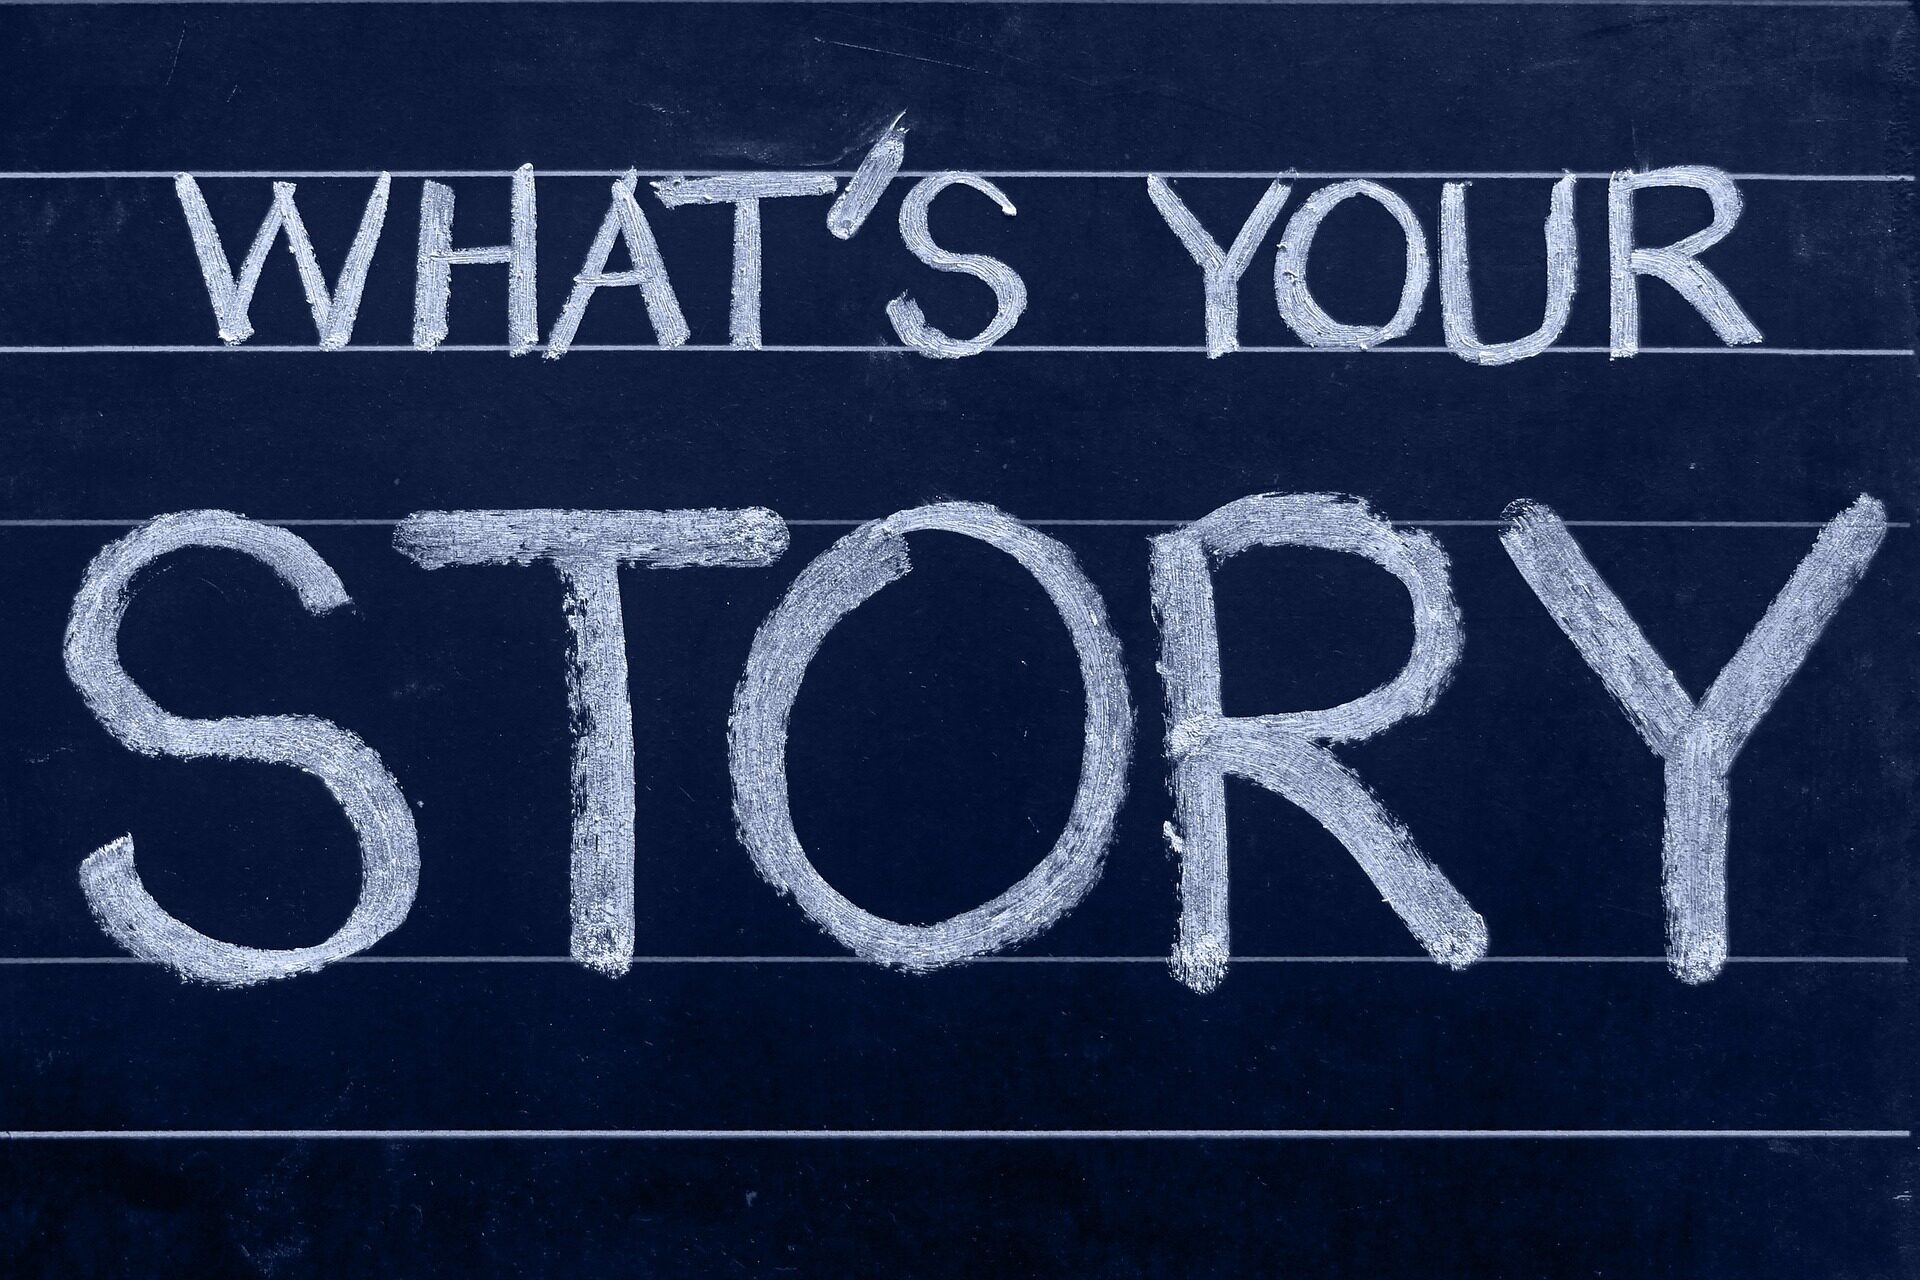 Abbildung einer Tafel mit der Aufschrift "What's your Story"